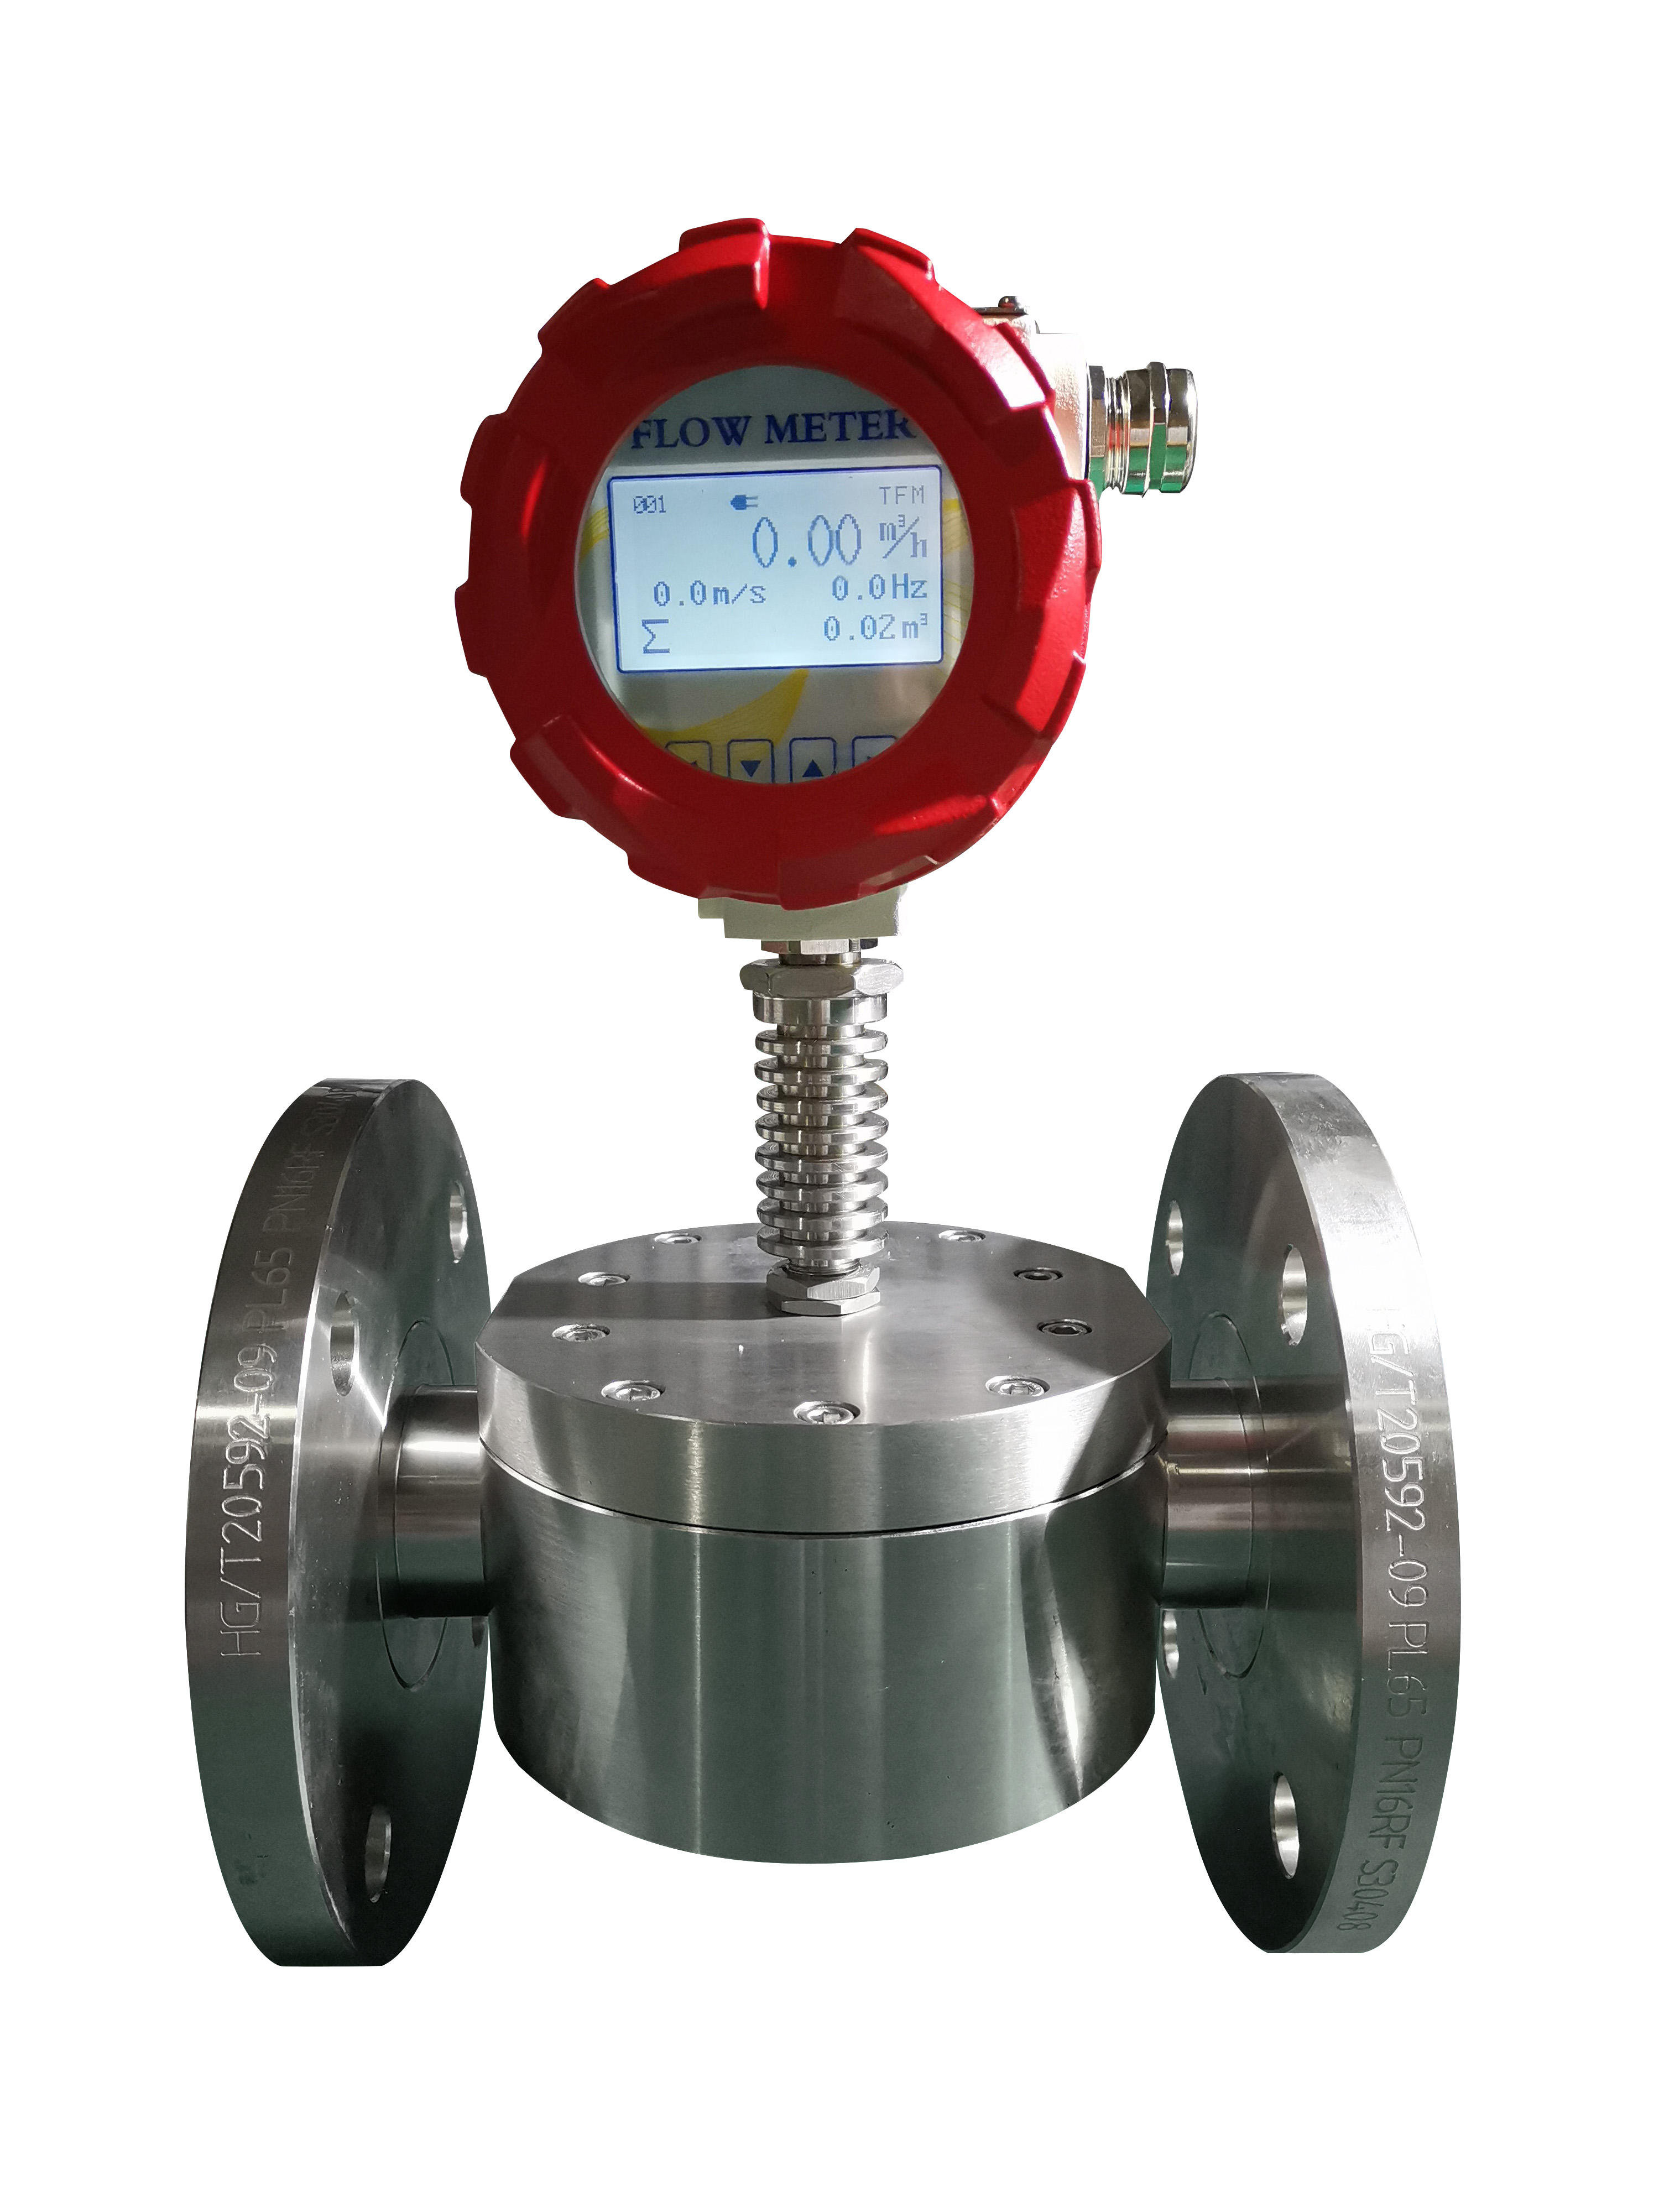 Gear Flow Meter -positive displacement flow meter